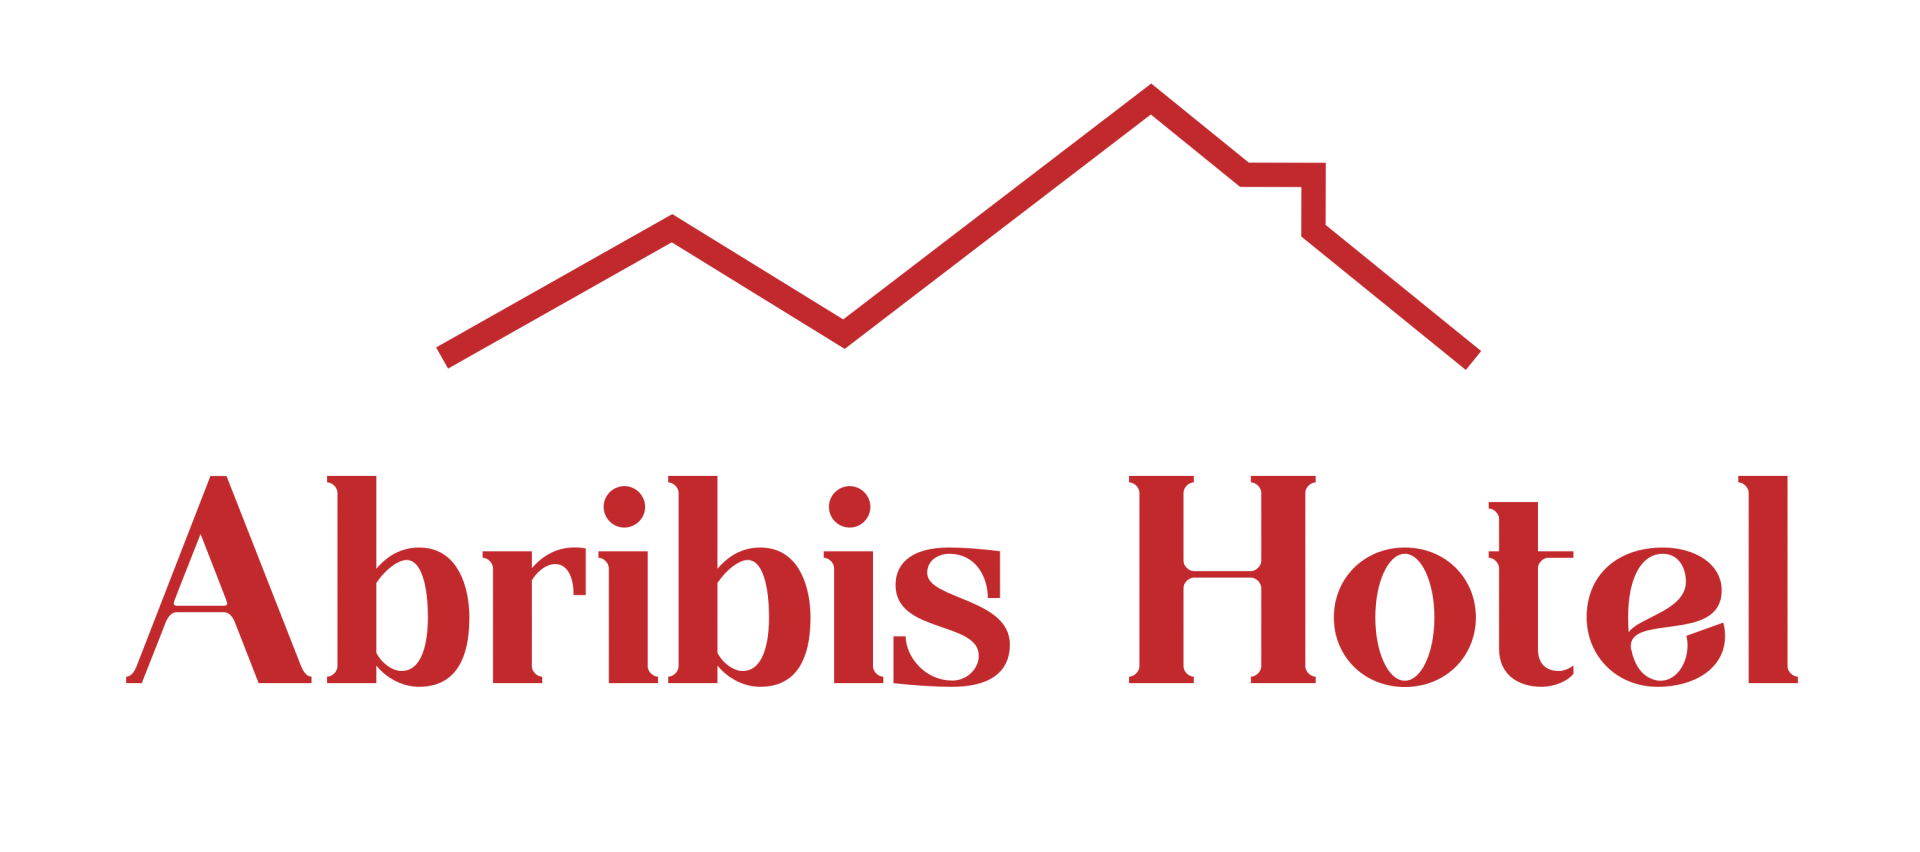 Abribis Hotel